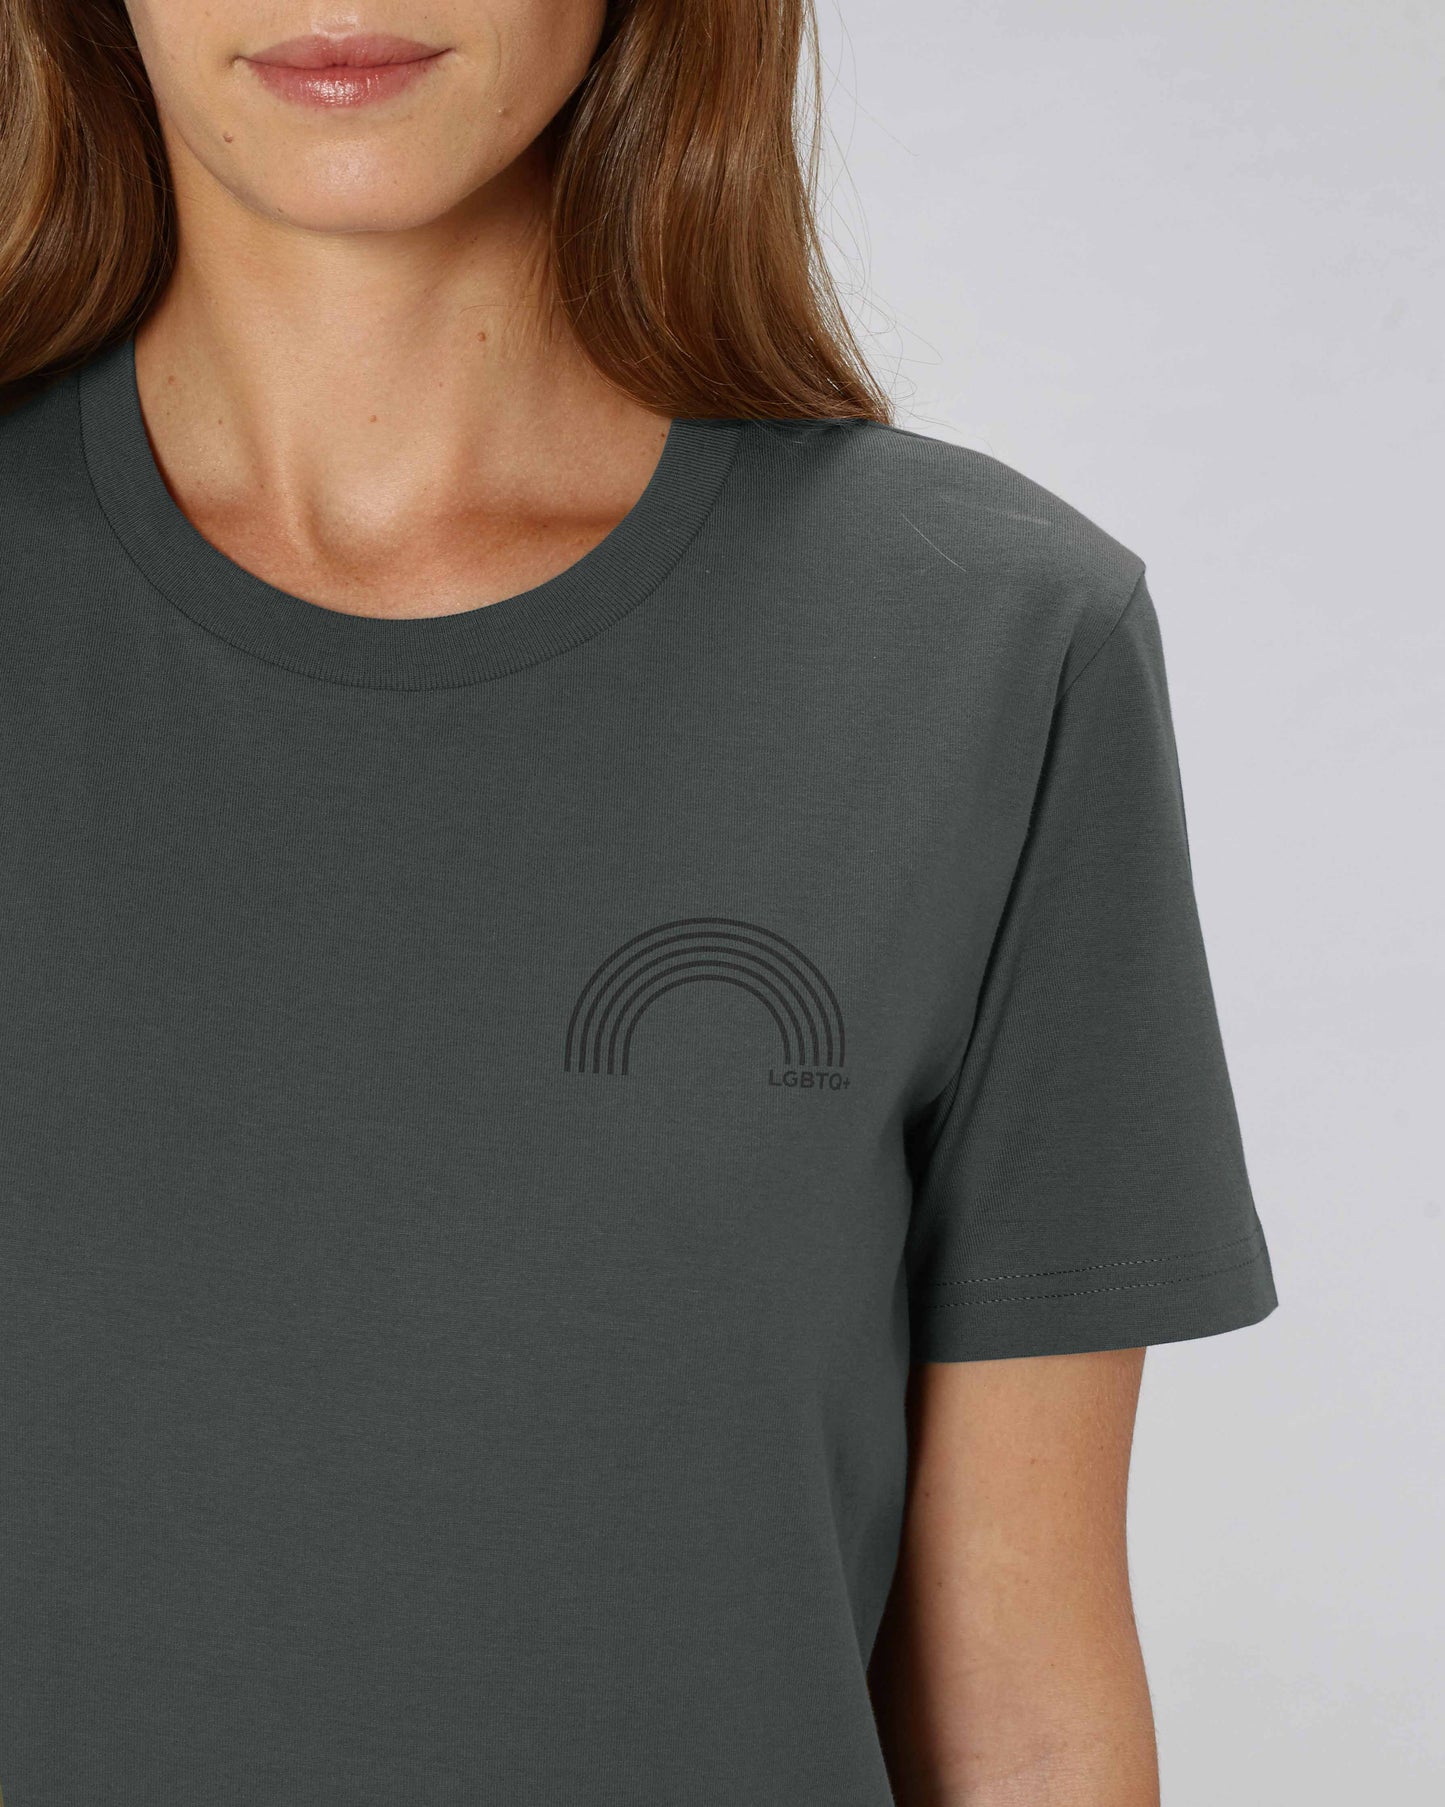 EINHORST® unisex Organic Shirt in "Anthracite" mit dem Motiv "lgbtq+ Regenbogen" in der Kombination schwarzer Regenbogen mit schwarzer Schrift, Bild von weiblicher Person mit Shirt